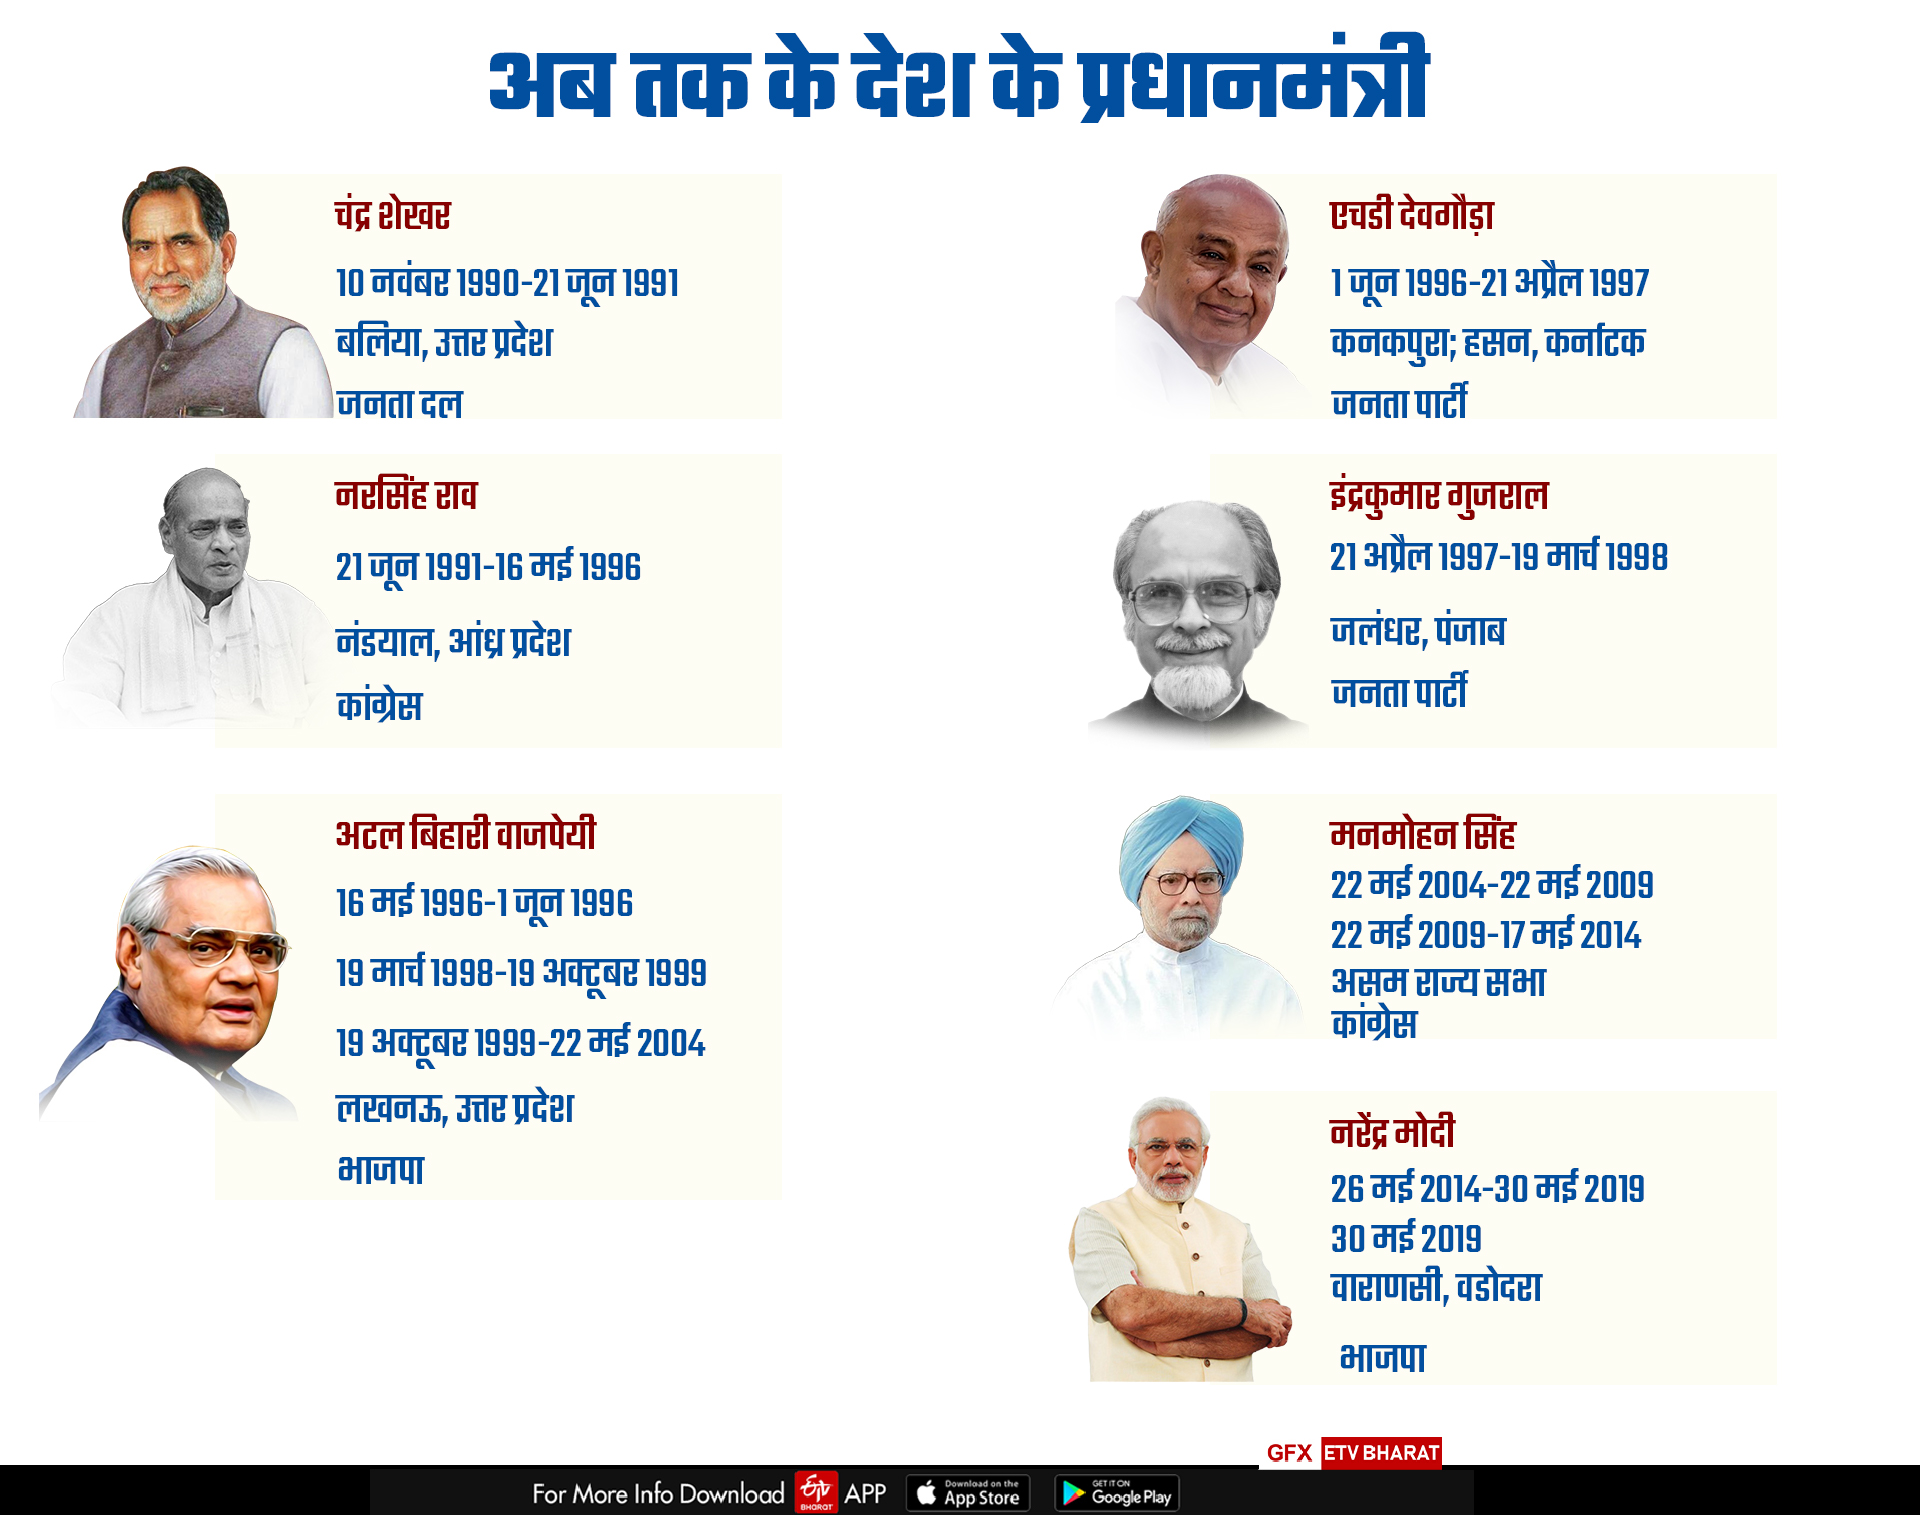 भारत के प्रधानमंत्रियों की सूची.